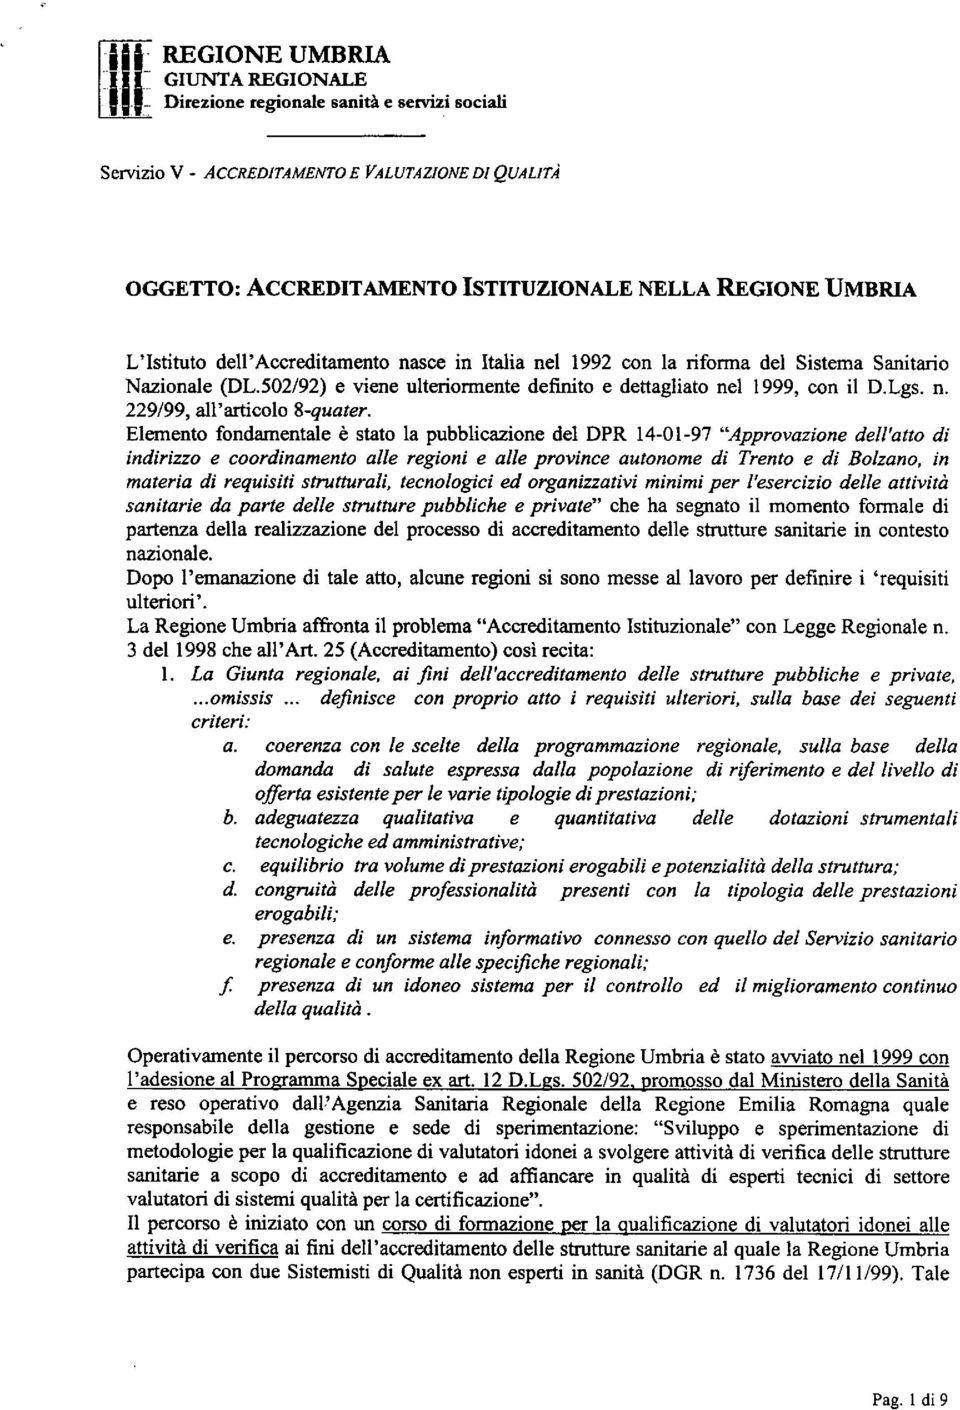 Italia nel 1992 con la rifonna del Sistema Sanitario Nazionale (DL.502/92) e viene ulterionnente definito e dettagliato nel 1999, con il D.Lgs. n. 229/99, all'articolo 8quater.